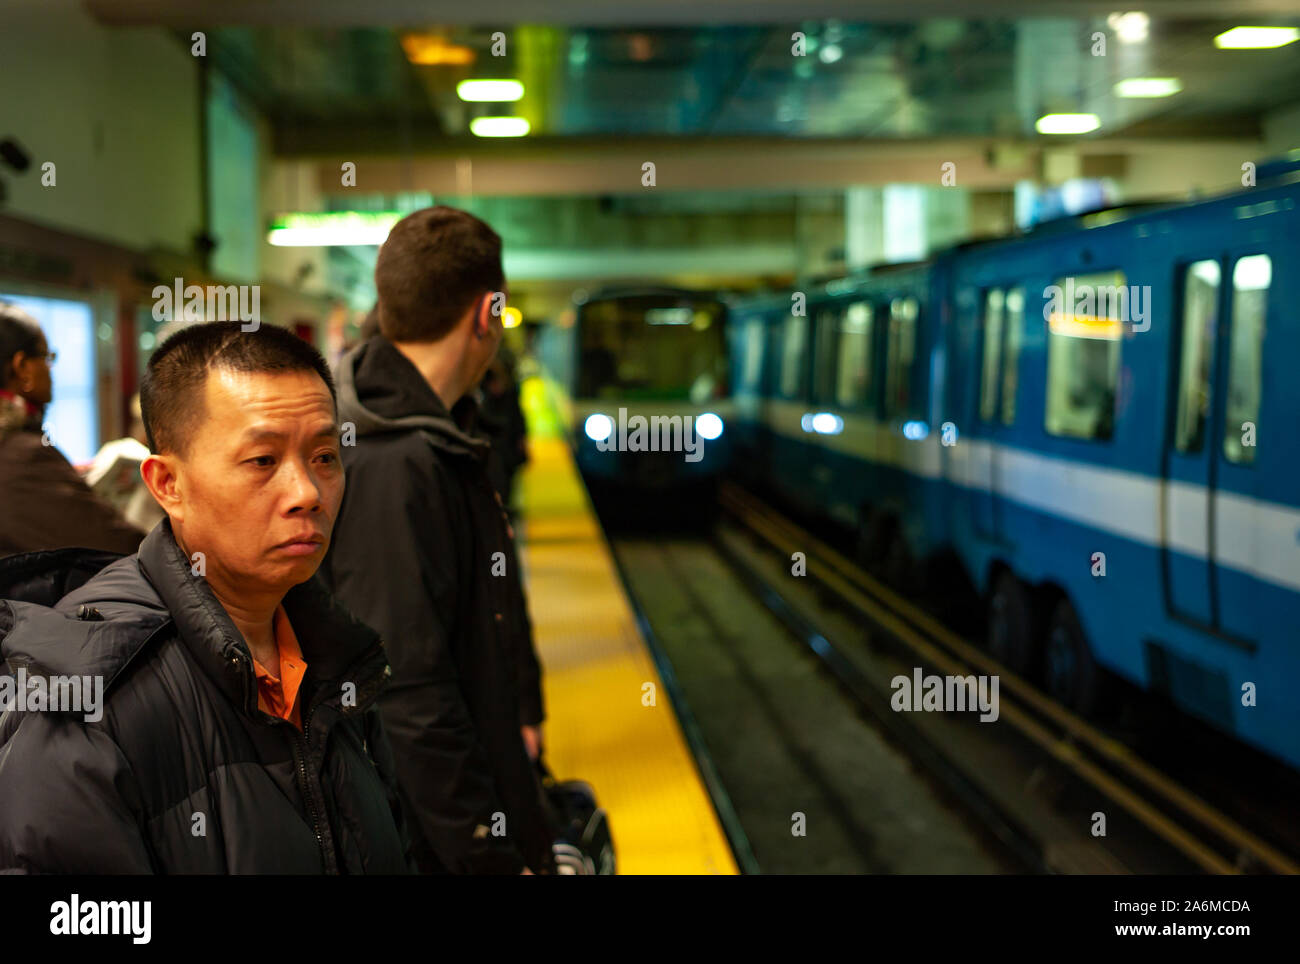 Montreal, Quebec/Kanada - 14. Januar 2013: Menschen warten auf die U-Bahn in einer Minute zu erreichen Stockfoto